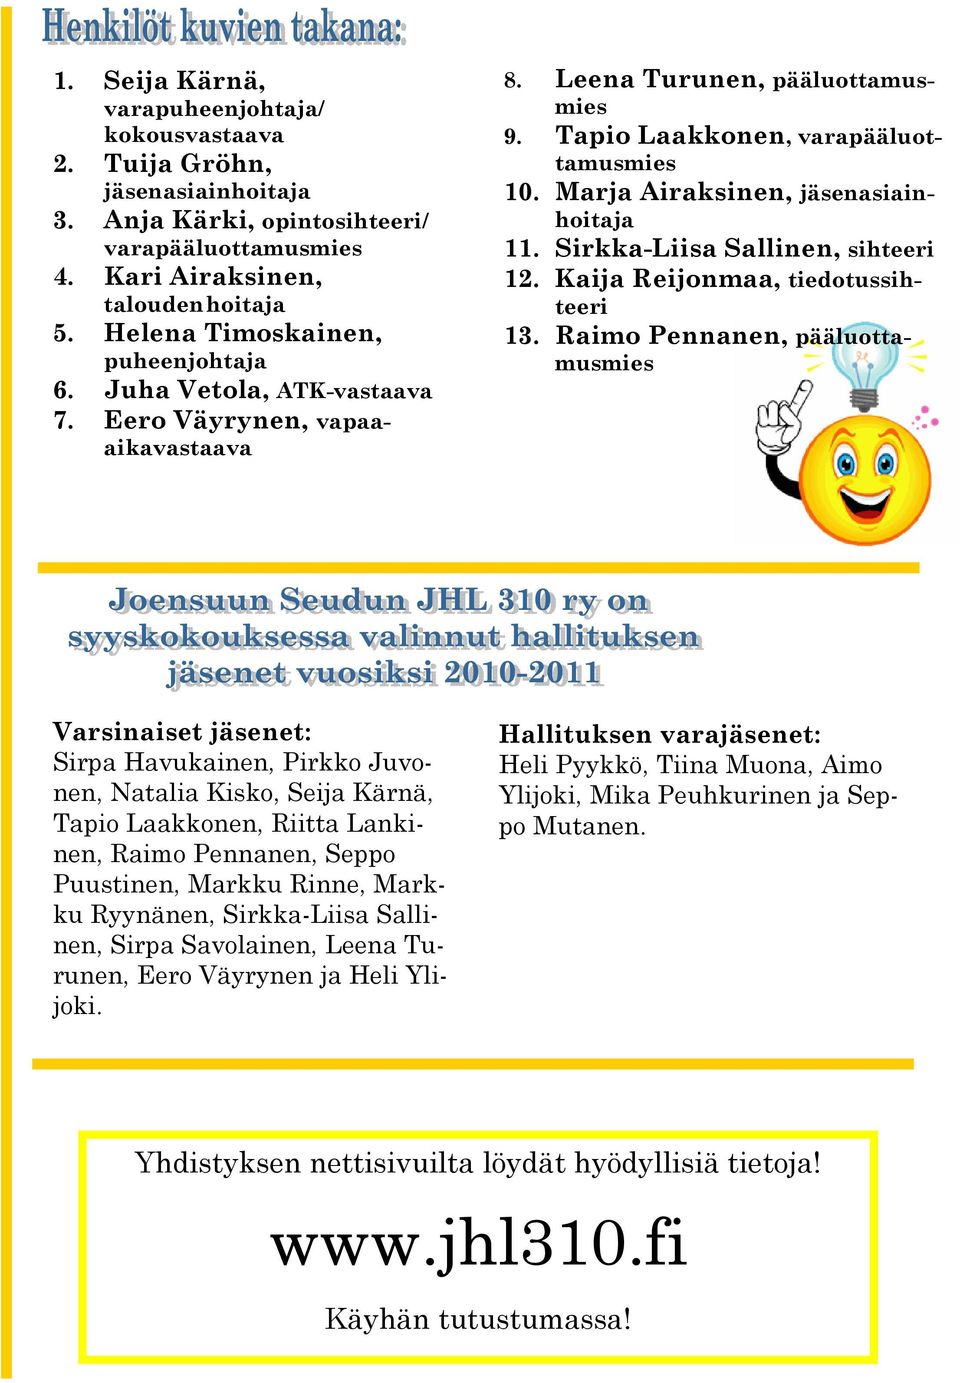 Marja Airaksinen, jäsenasiainhoitaja 11. Sirkka-Liisa Sallinen, sihteeri 12. Kaija Reijonmaa, tiedotussihteeri 13.